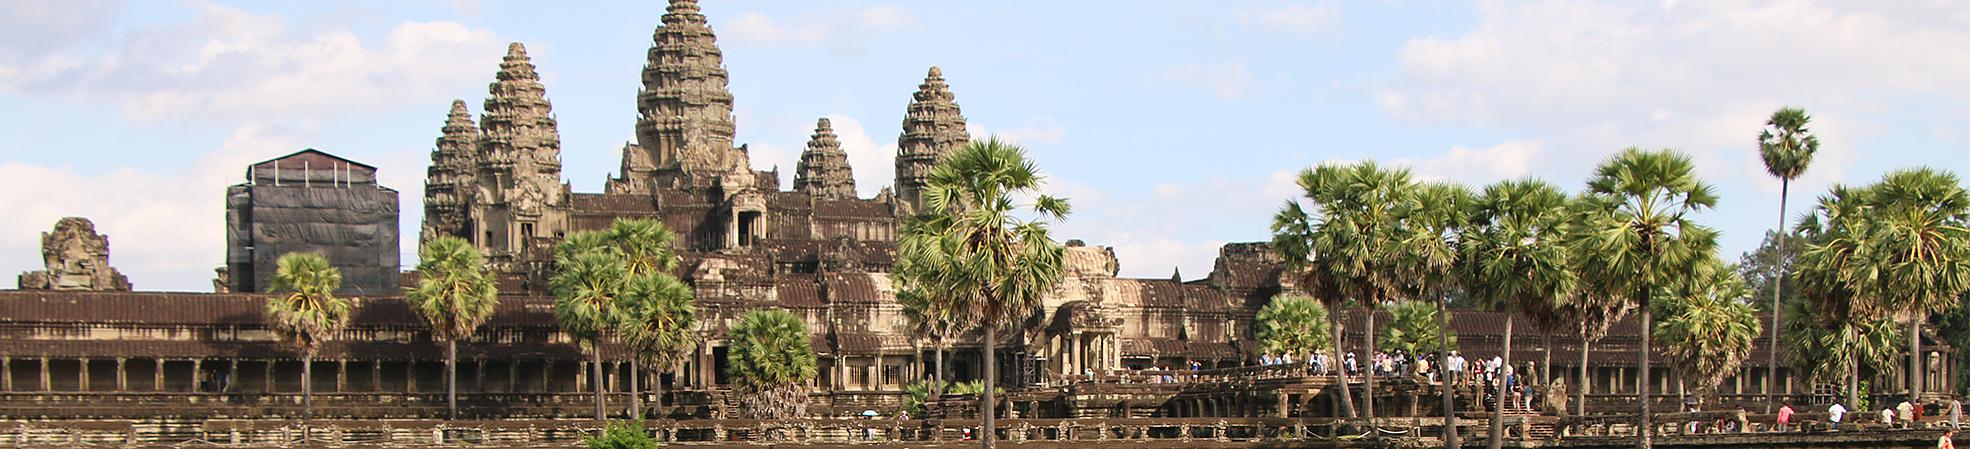 Vietnam & Cambodia Tours